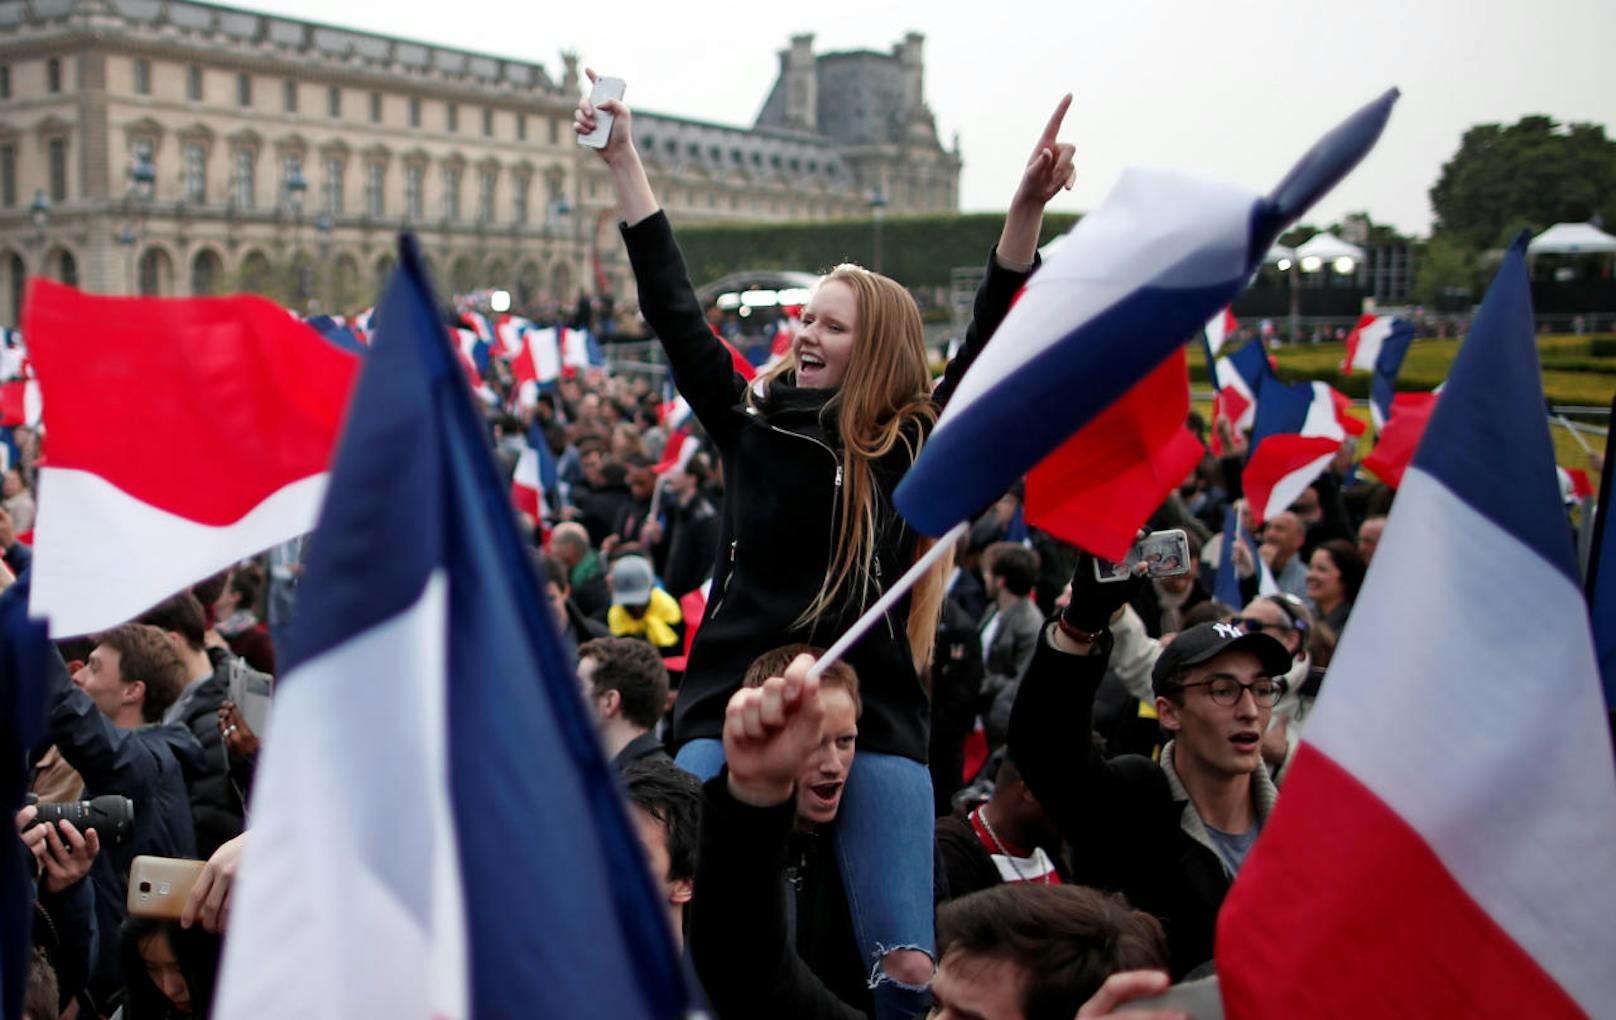 Paris, 20 Uhr: Nach stundenlangem Warten wird das Ergebnis der Stichwahl verkündet und ....